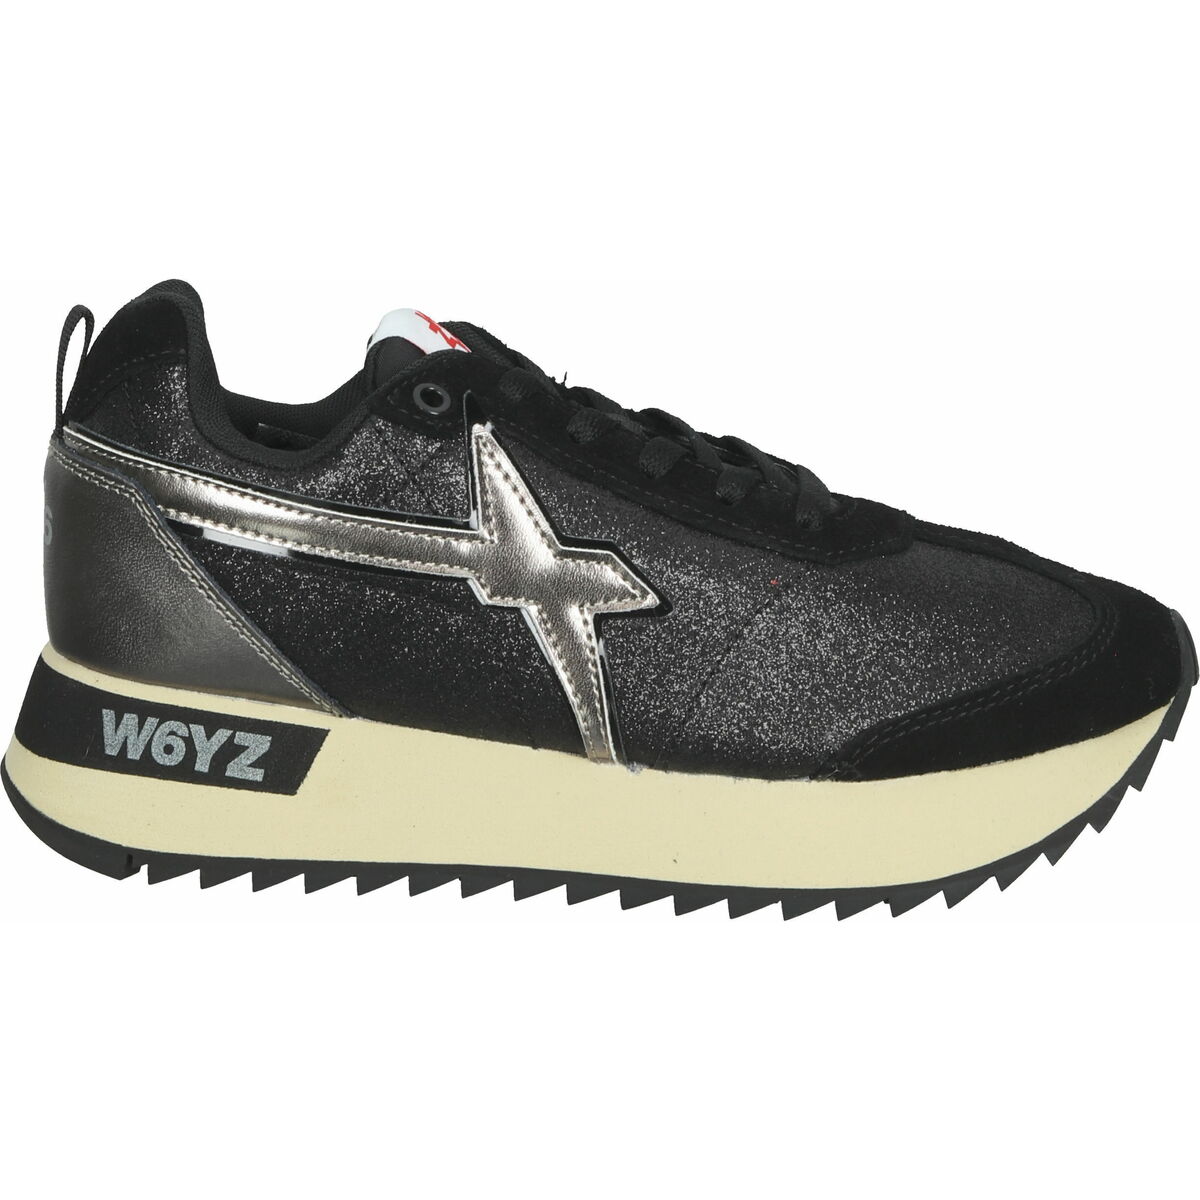 Schoenen Dames Lage sneakers W6yz Sneaker Zwart